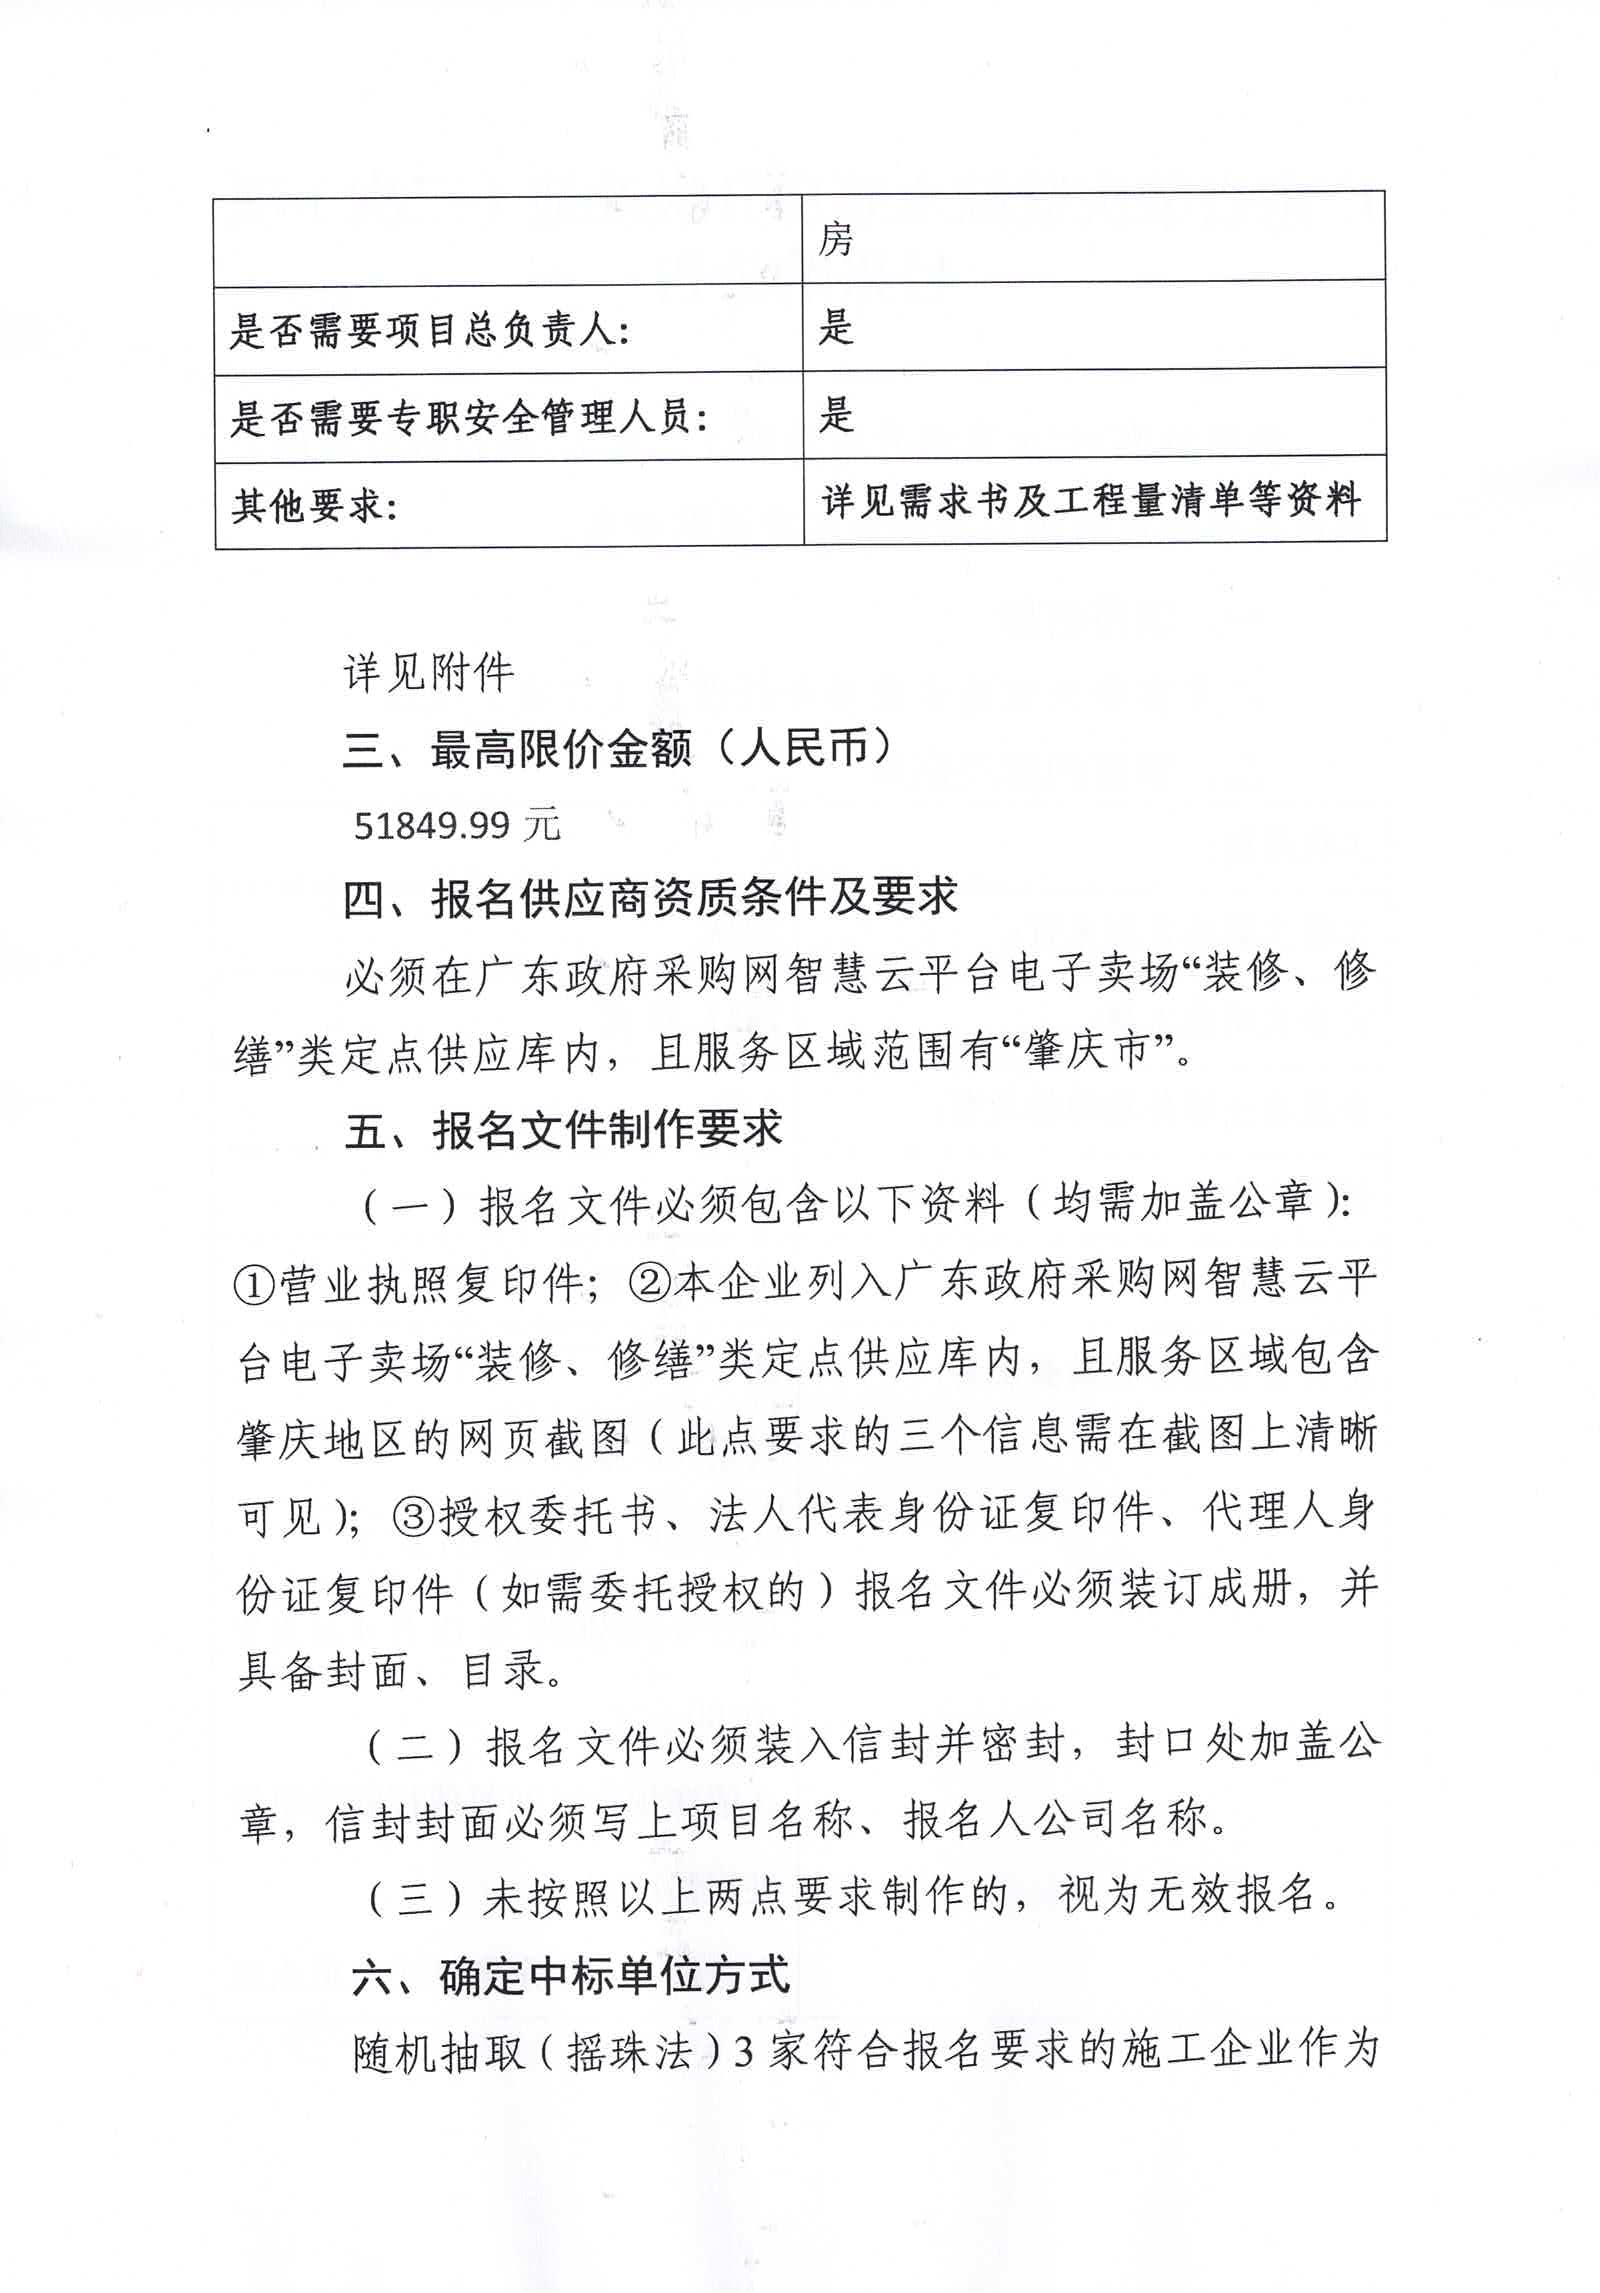 广东省肇庆监狱水泵房升级改造（二次）项目采购公告2.jpg